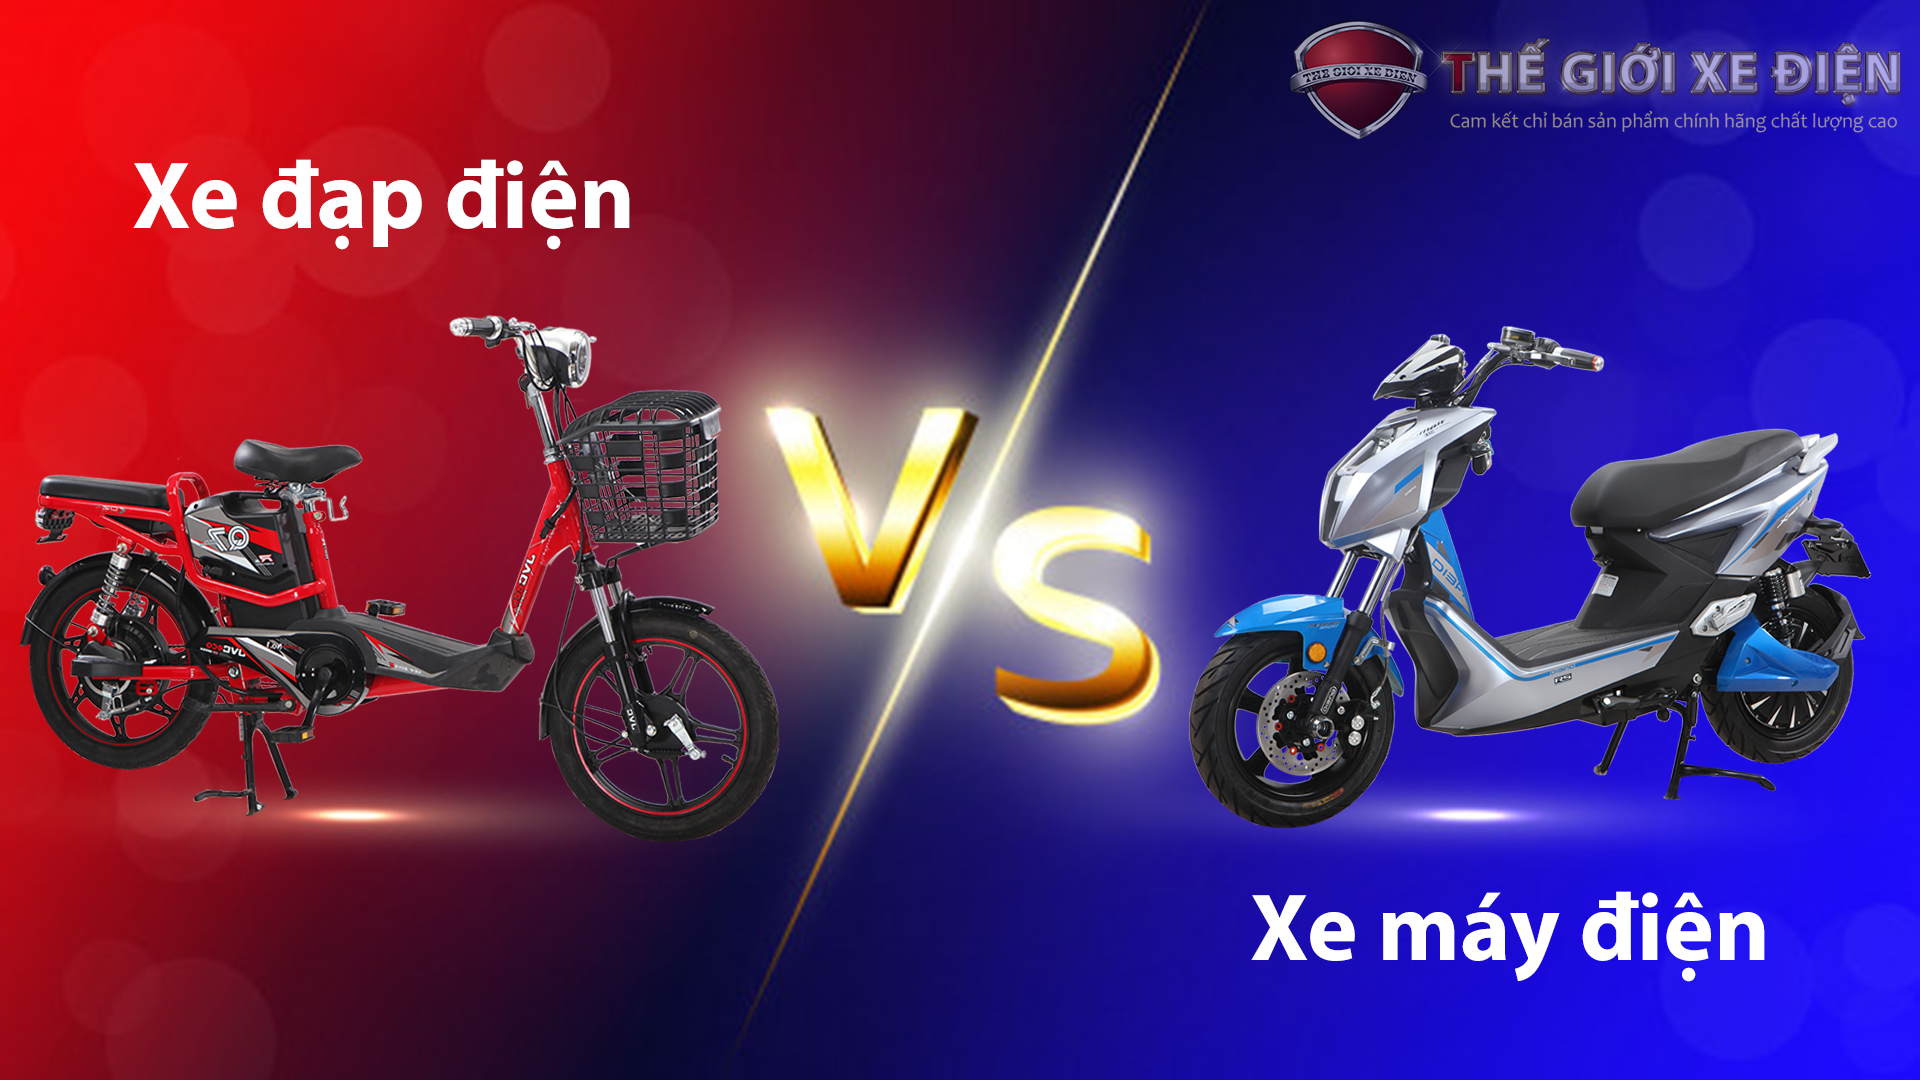 So sánh xe máy điện và xe đạp điện khác nhau như thế nào